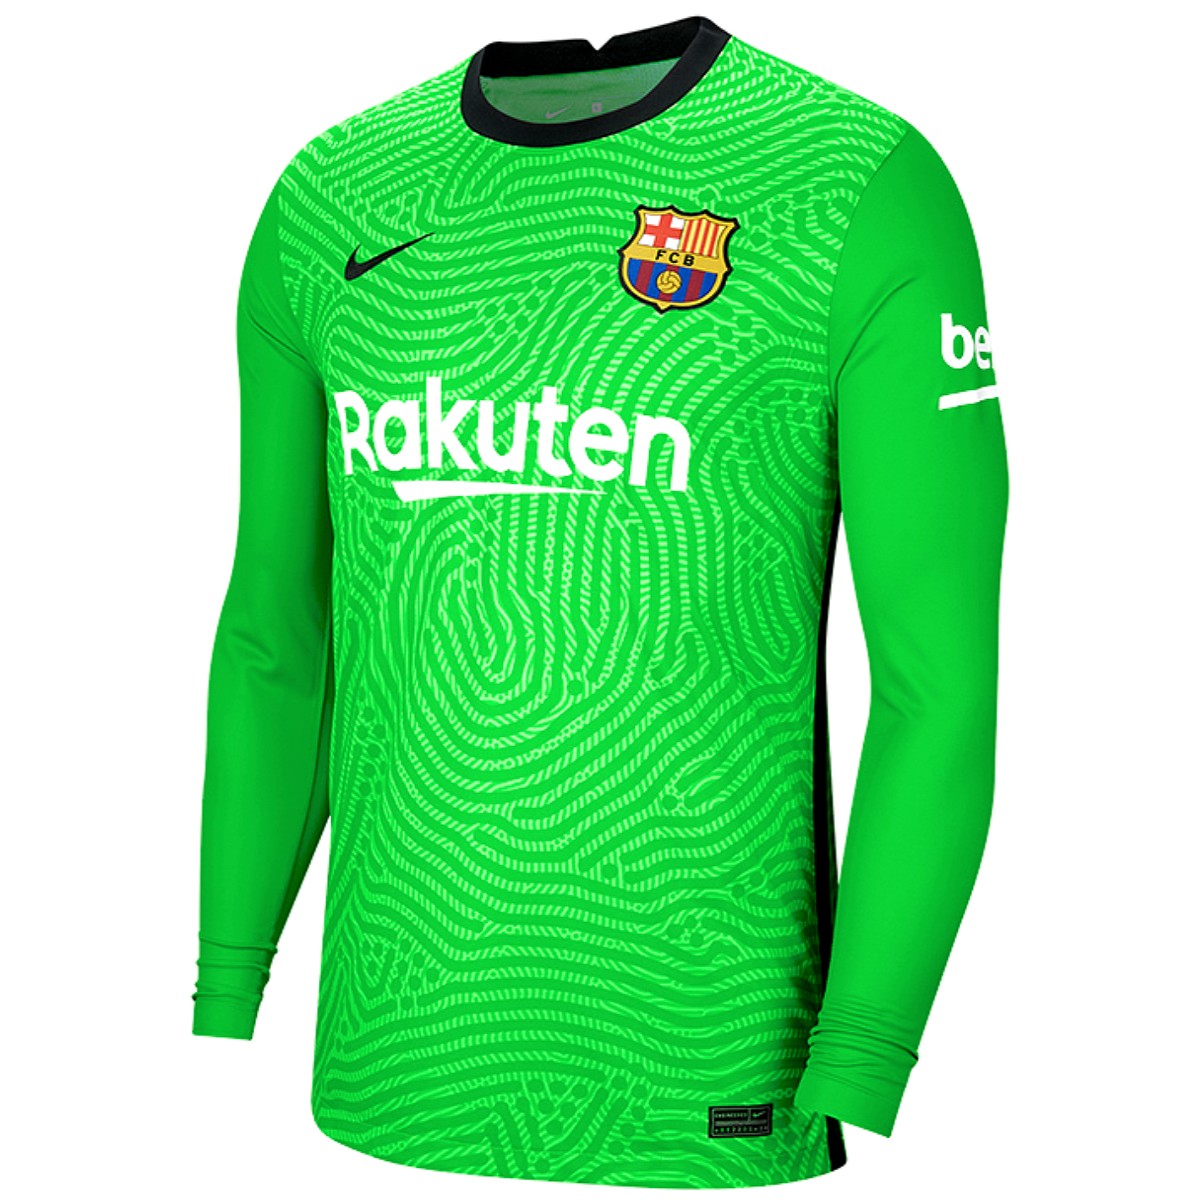 Dedos de los pies delicado Tratamiento Preferencial FC Barcelona goalkeeper Home soccer jersey 2020/21 - Nike –  SoccerTracksuits.com